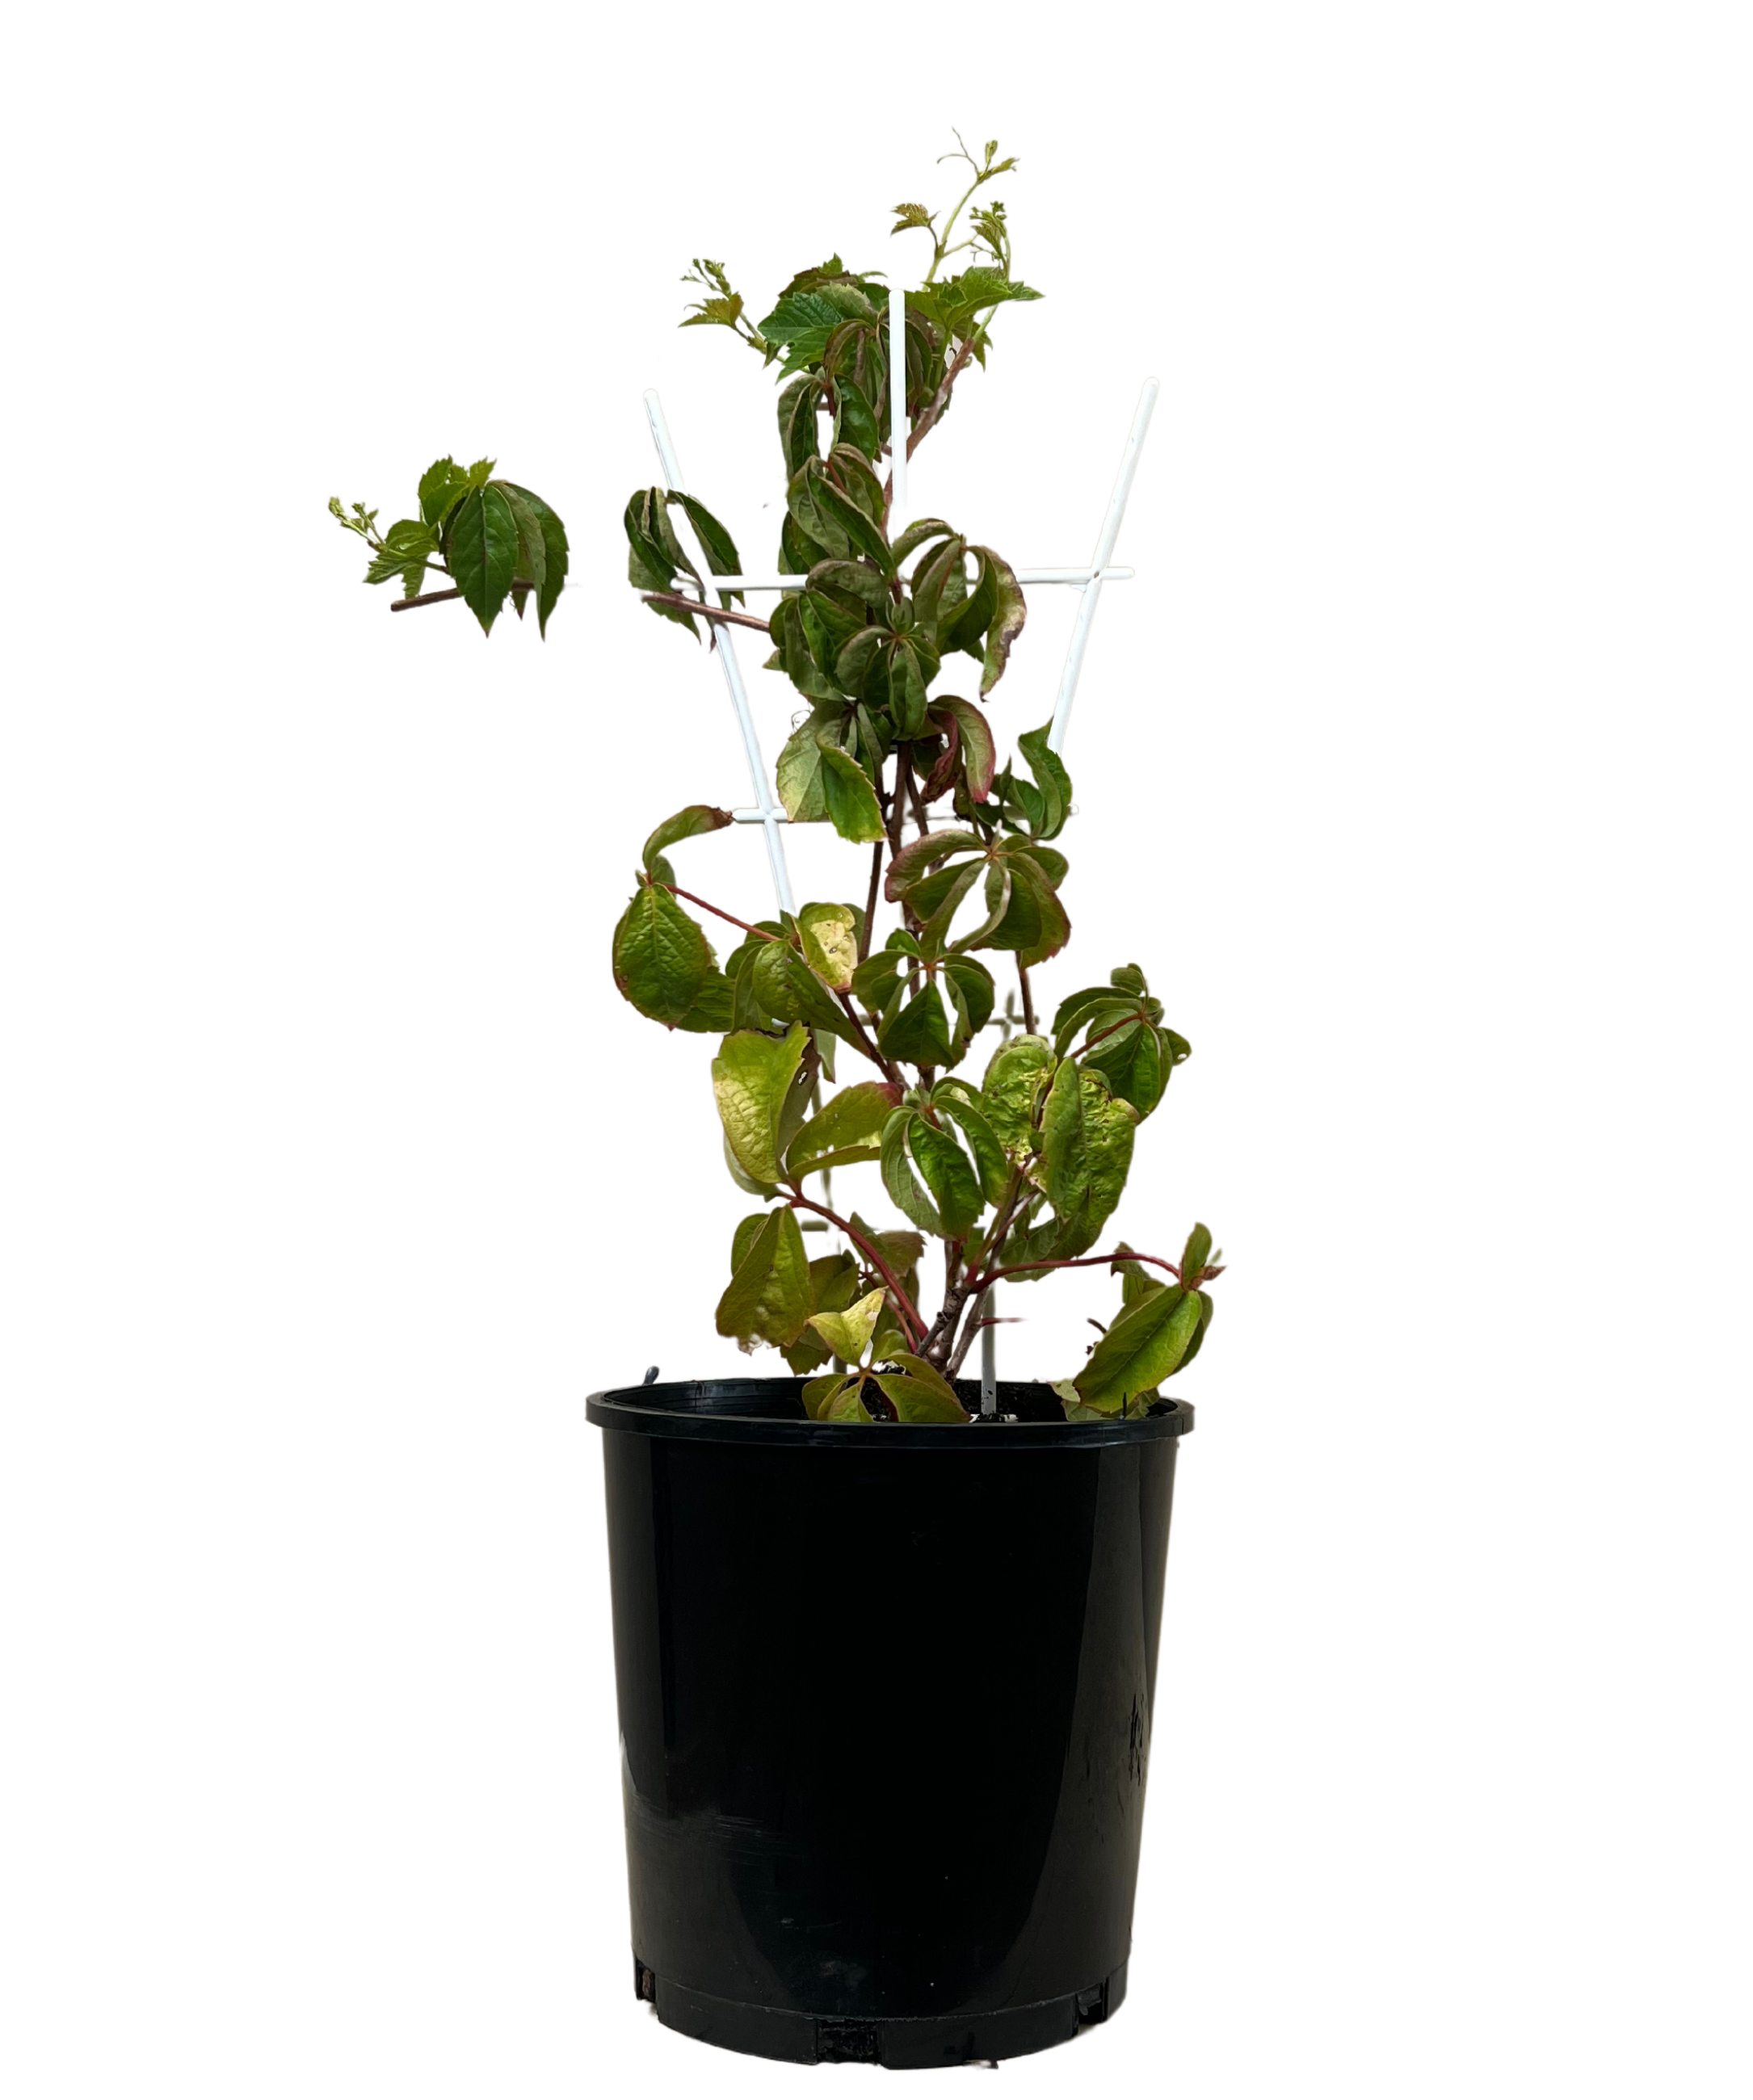 Virginia Creeper - Parthenocissus Quinquefolia